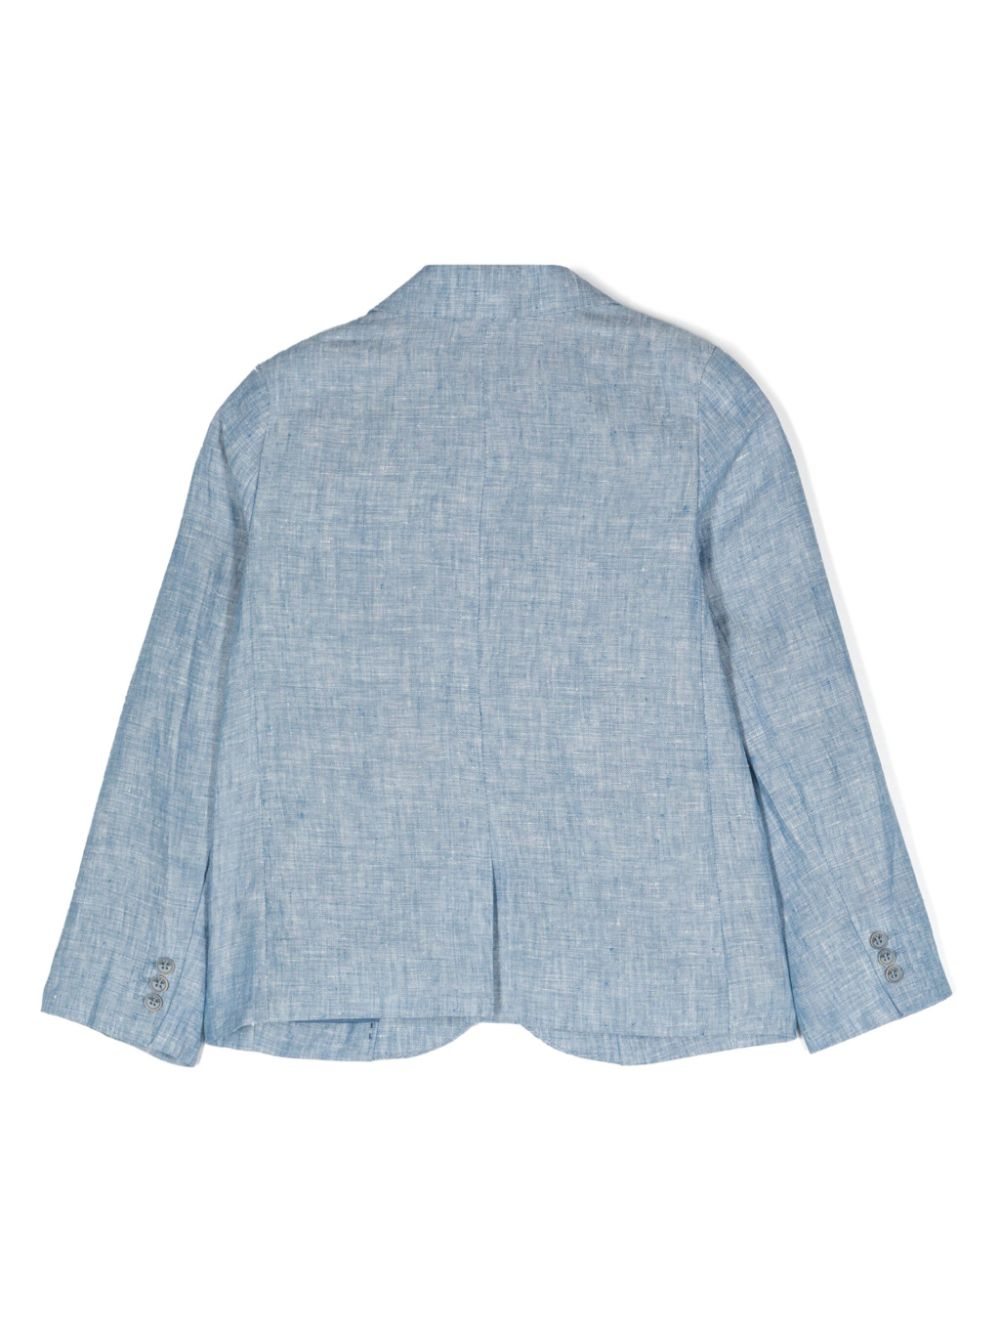 Blue linen blazer for boys